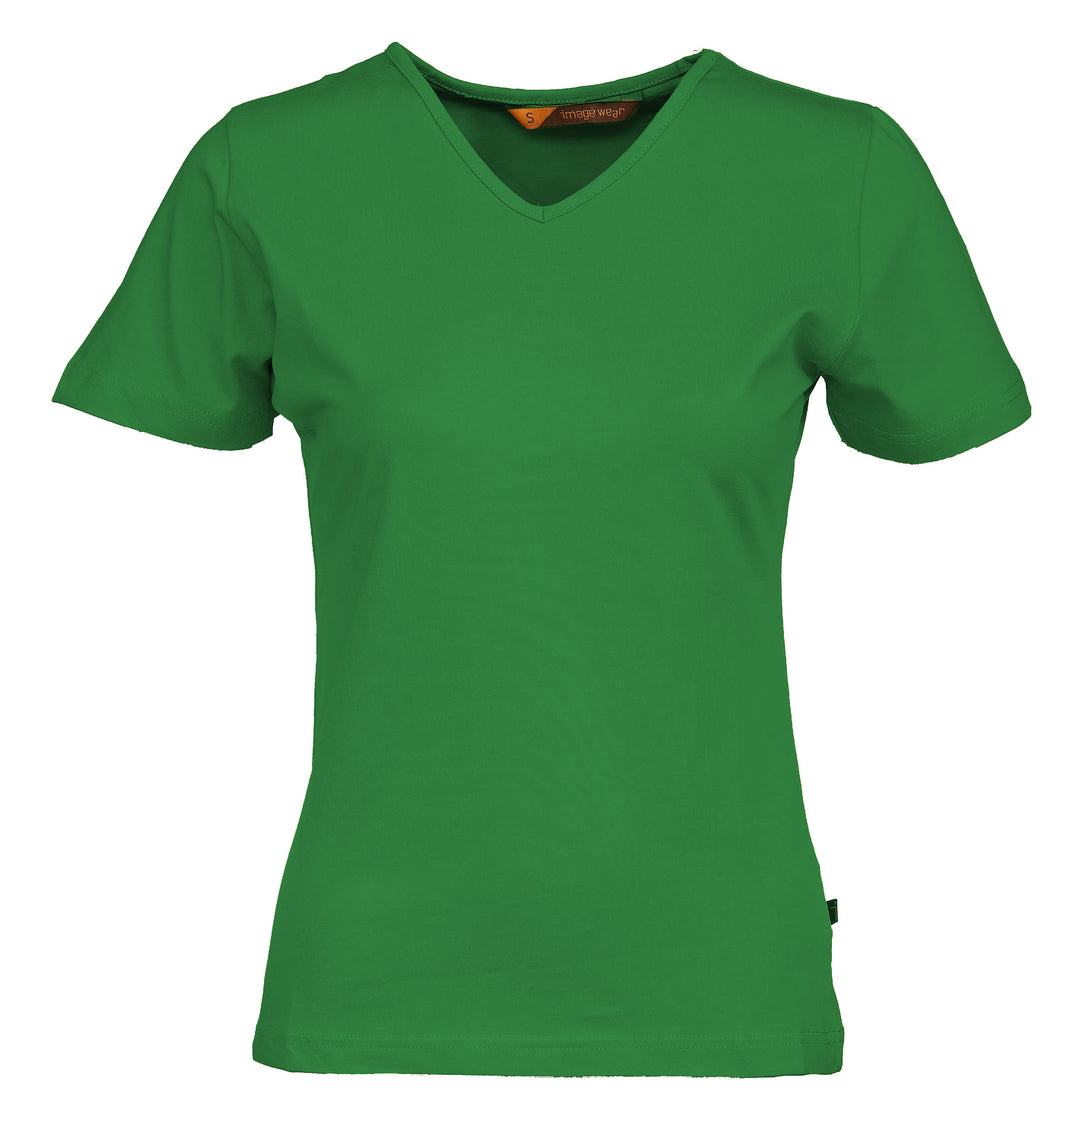 Naisten vihreä lyhythihainen T-paita v-pääntiellä. Malli on aavistuksen tyköistuva.